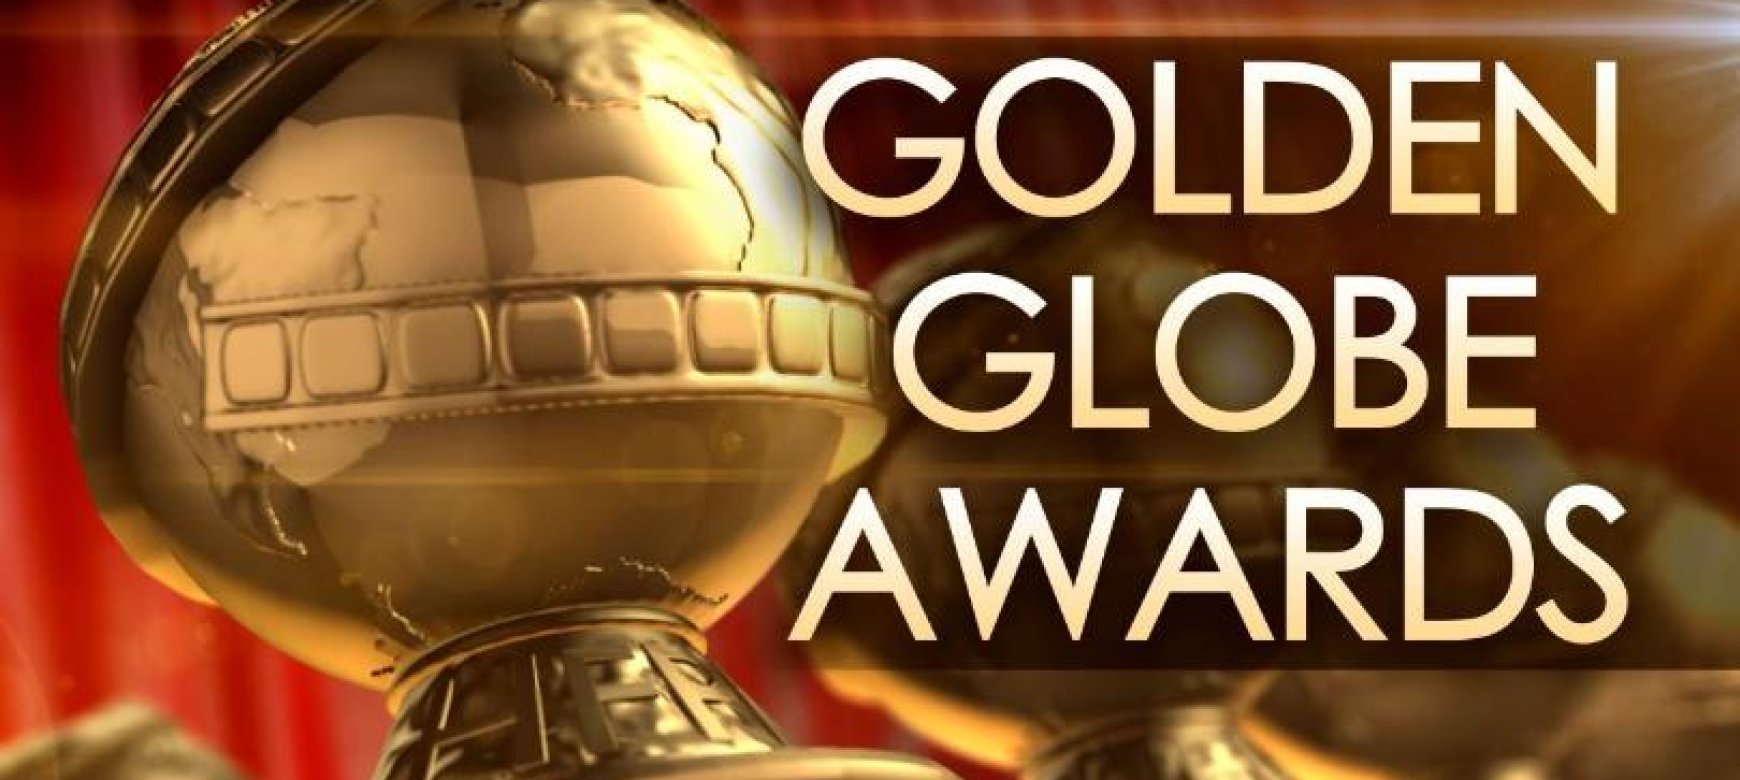 Τα καλύτερα μανικιούρ - Golden Globes 2019